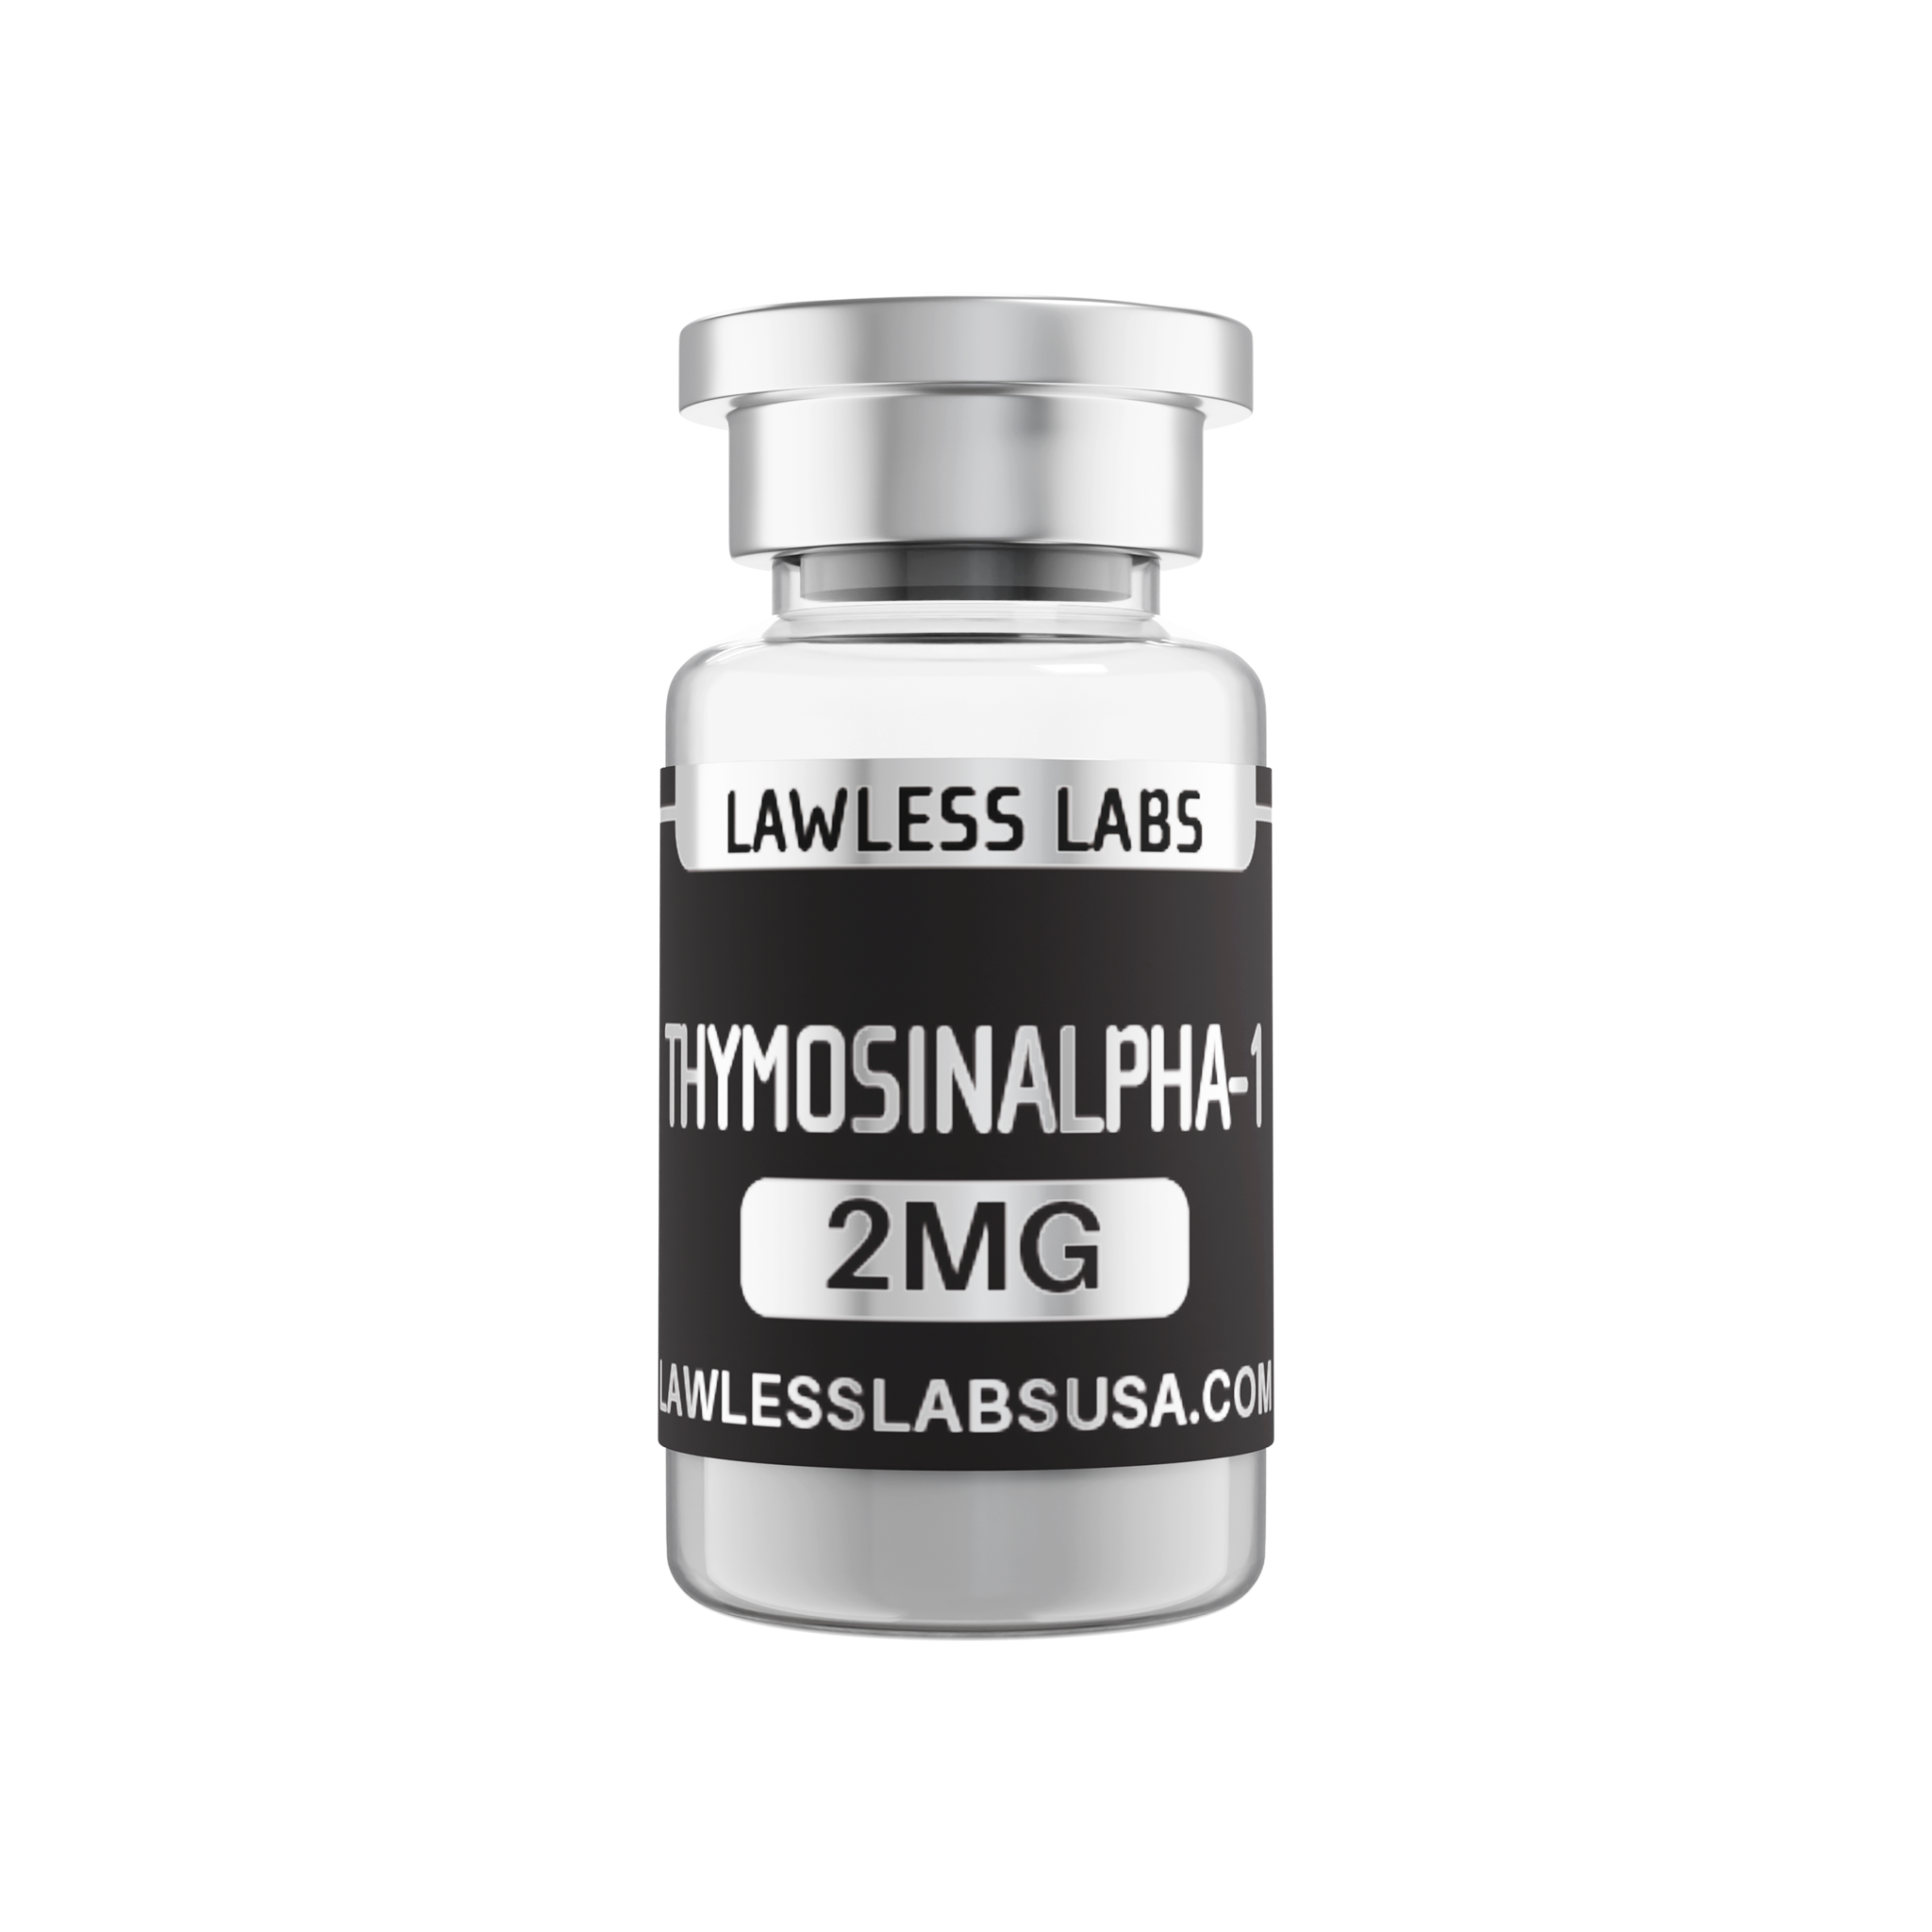 ThymosinAlpha-1 - 2mg